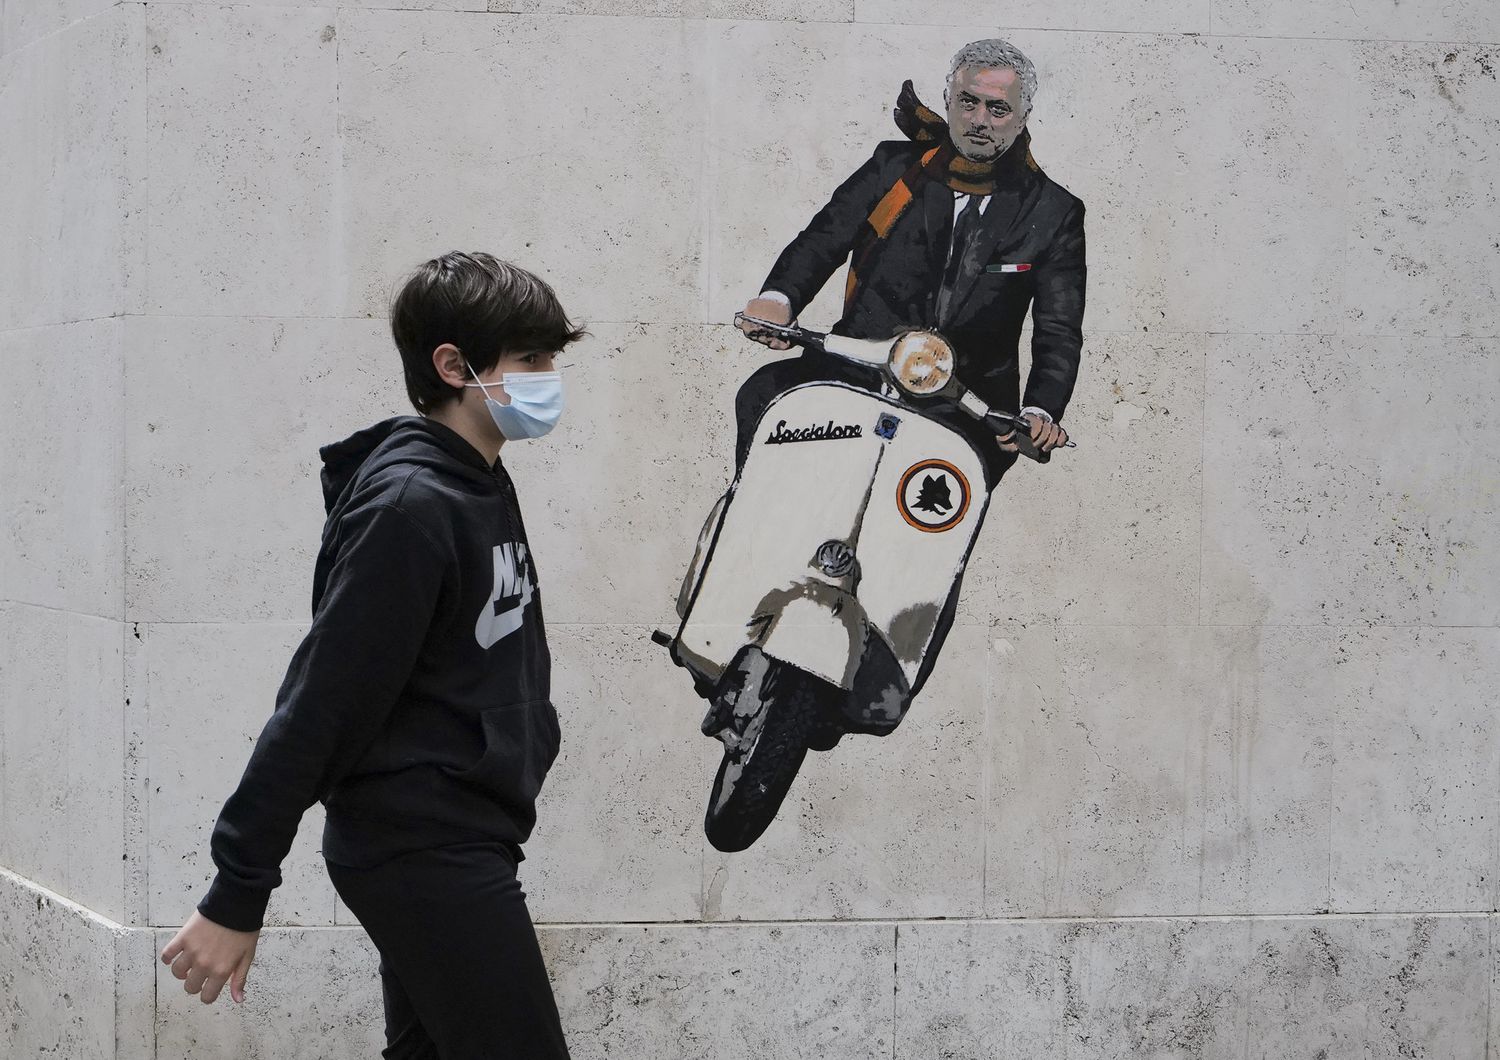 Un murales su Mourinho comparso a Roma